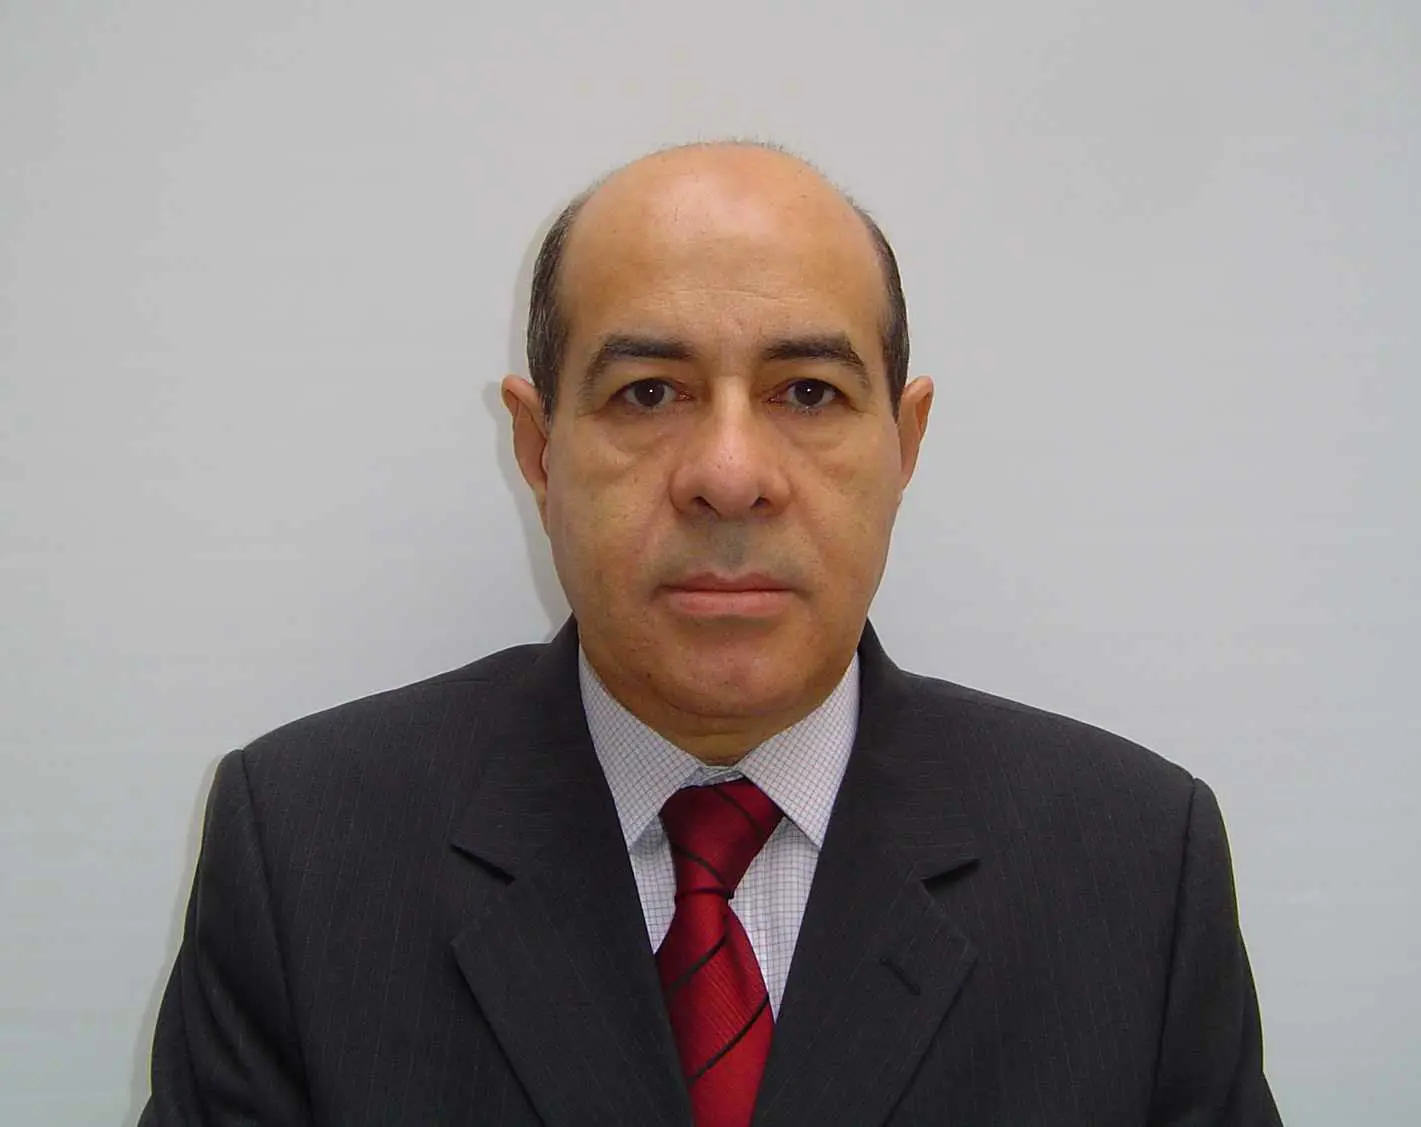 Humberto Arantes de Carvalho